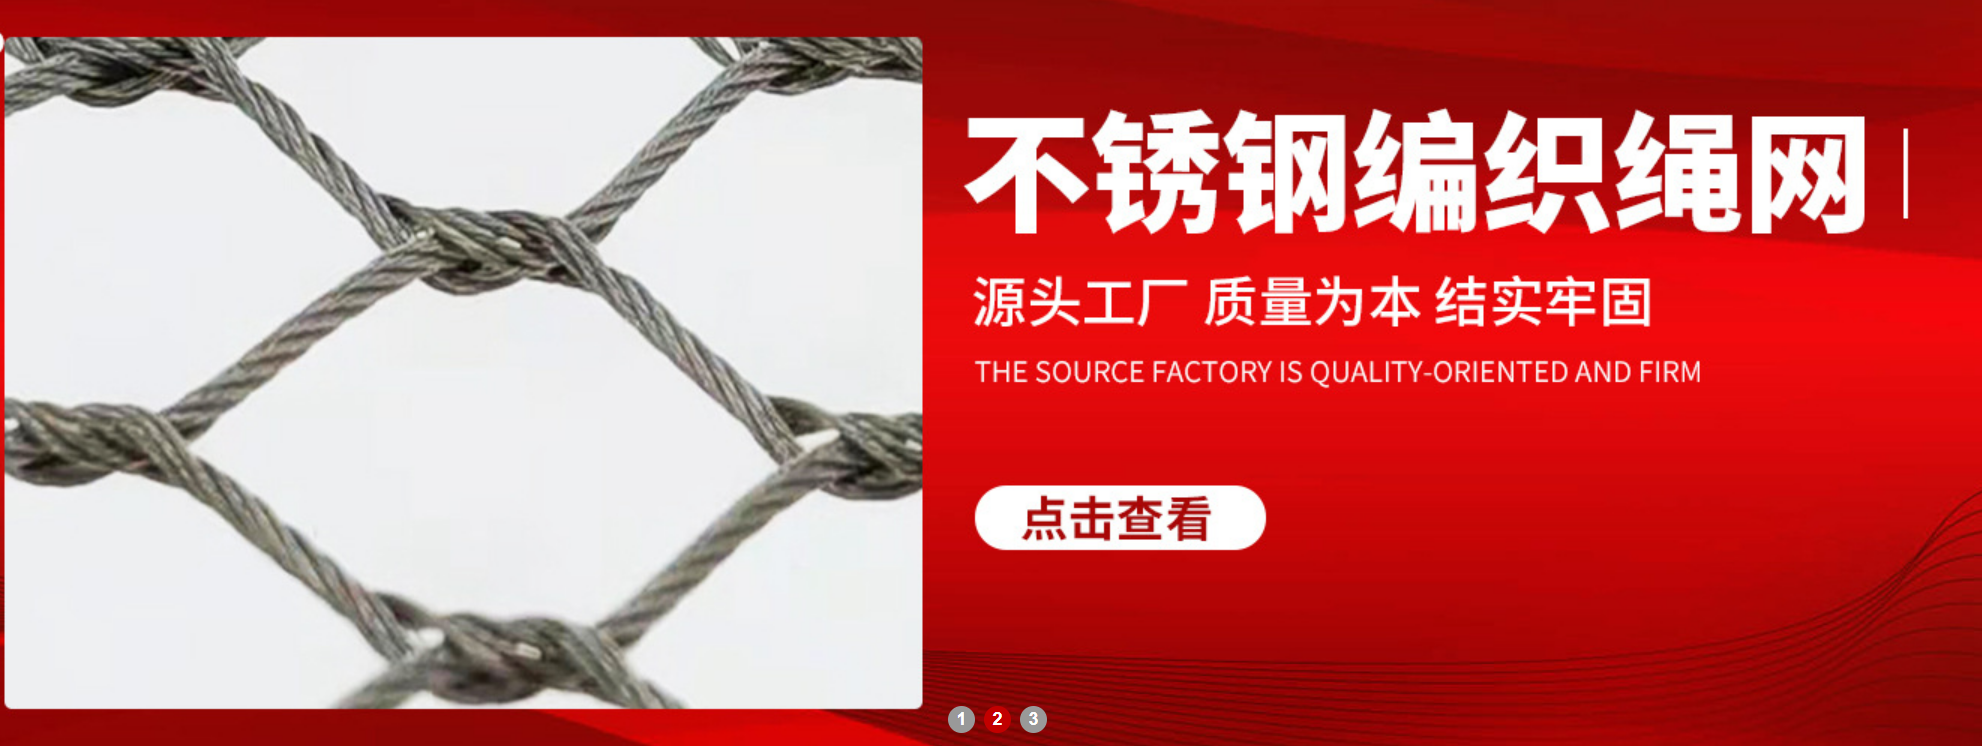 不锈钢绳网生产厂家 运通.png